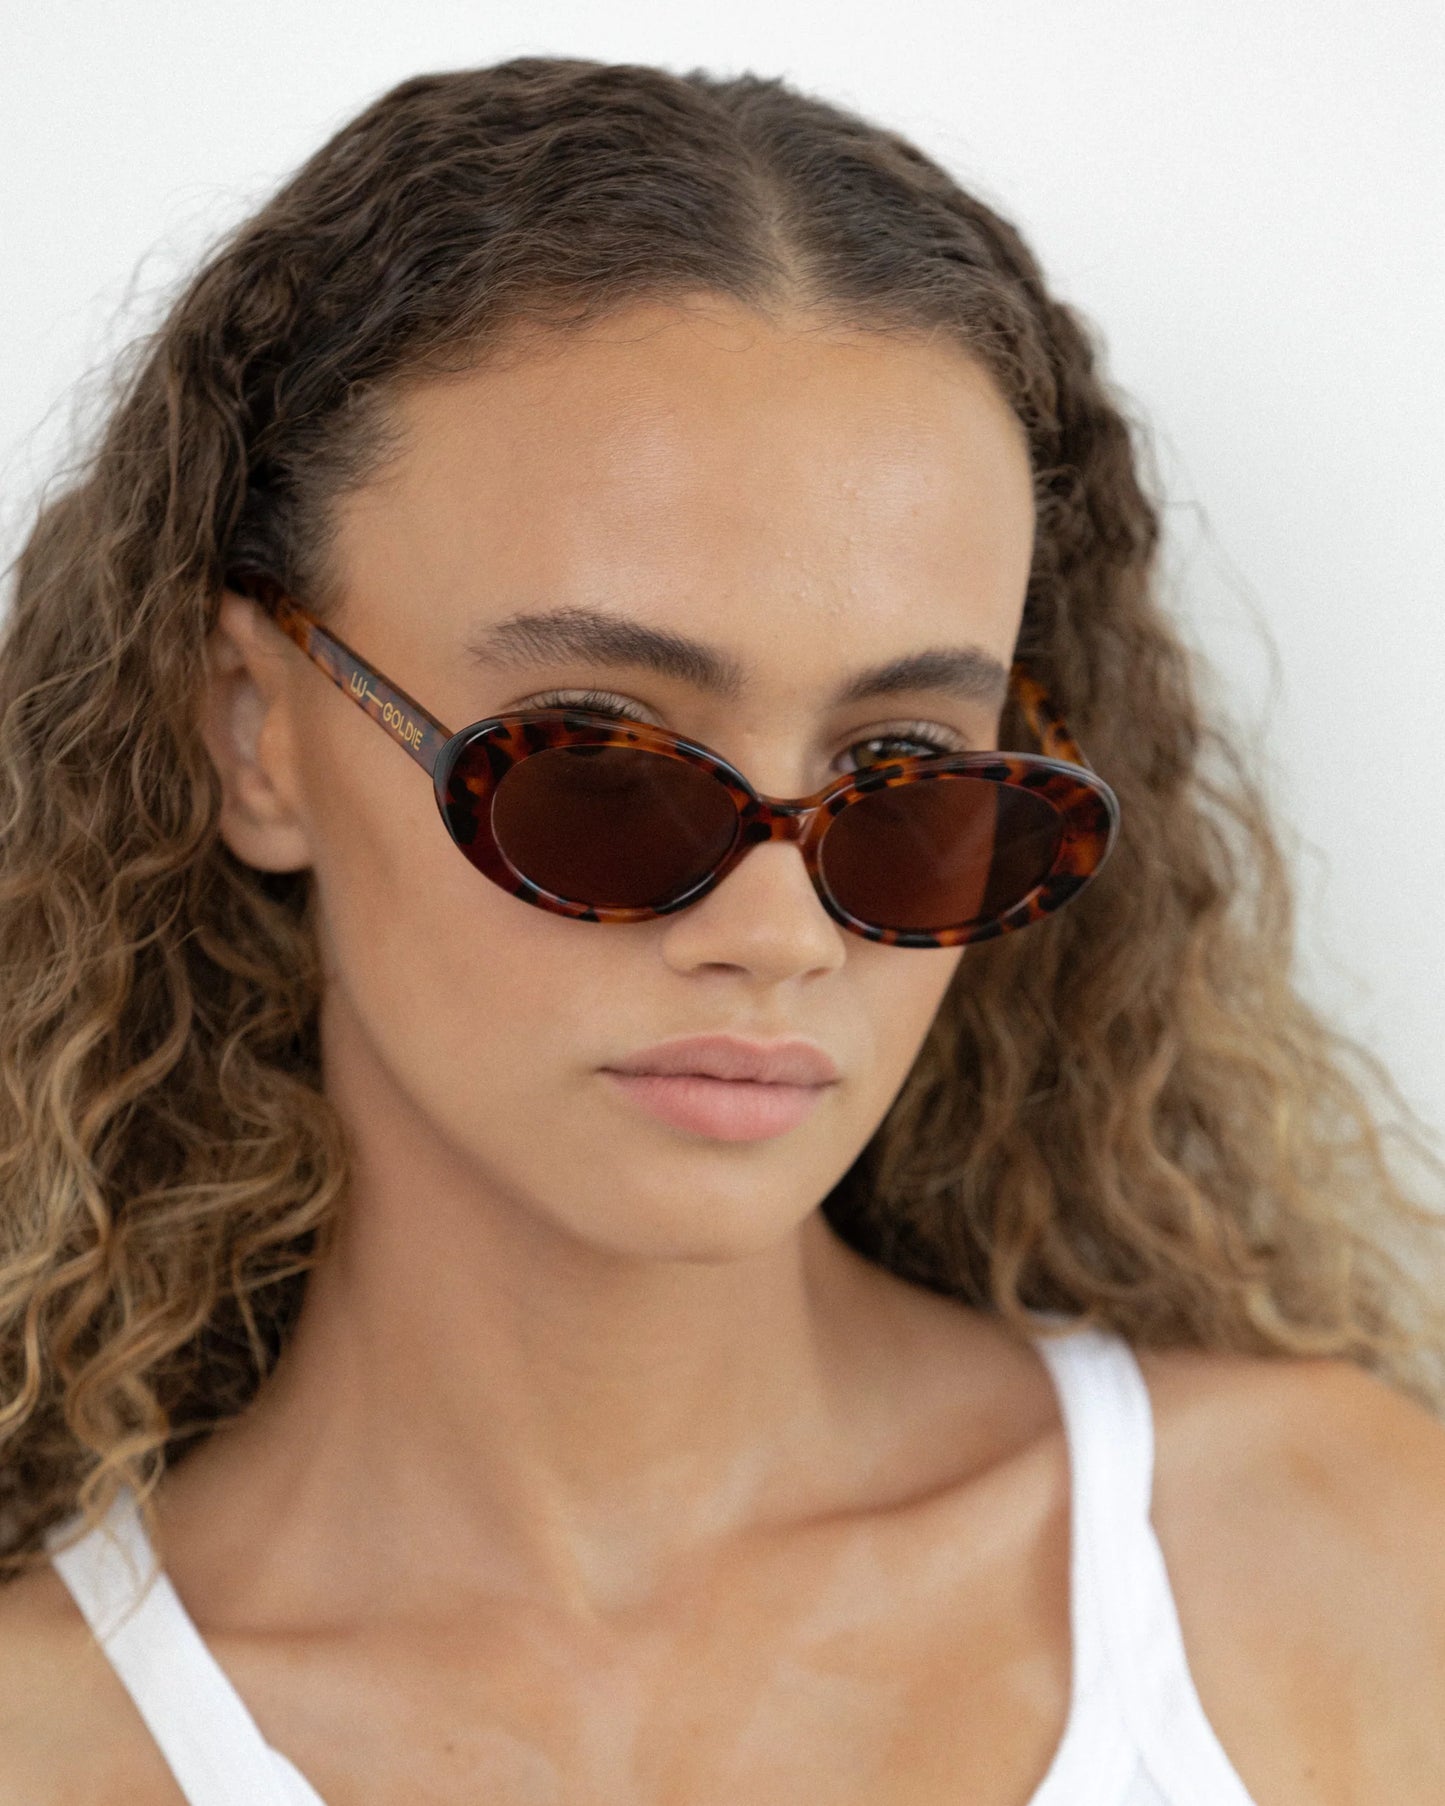 Jeanne - Tortoise Sunglasses